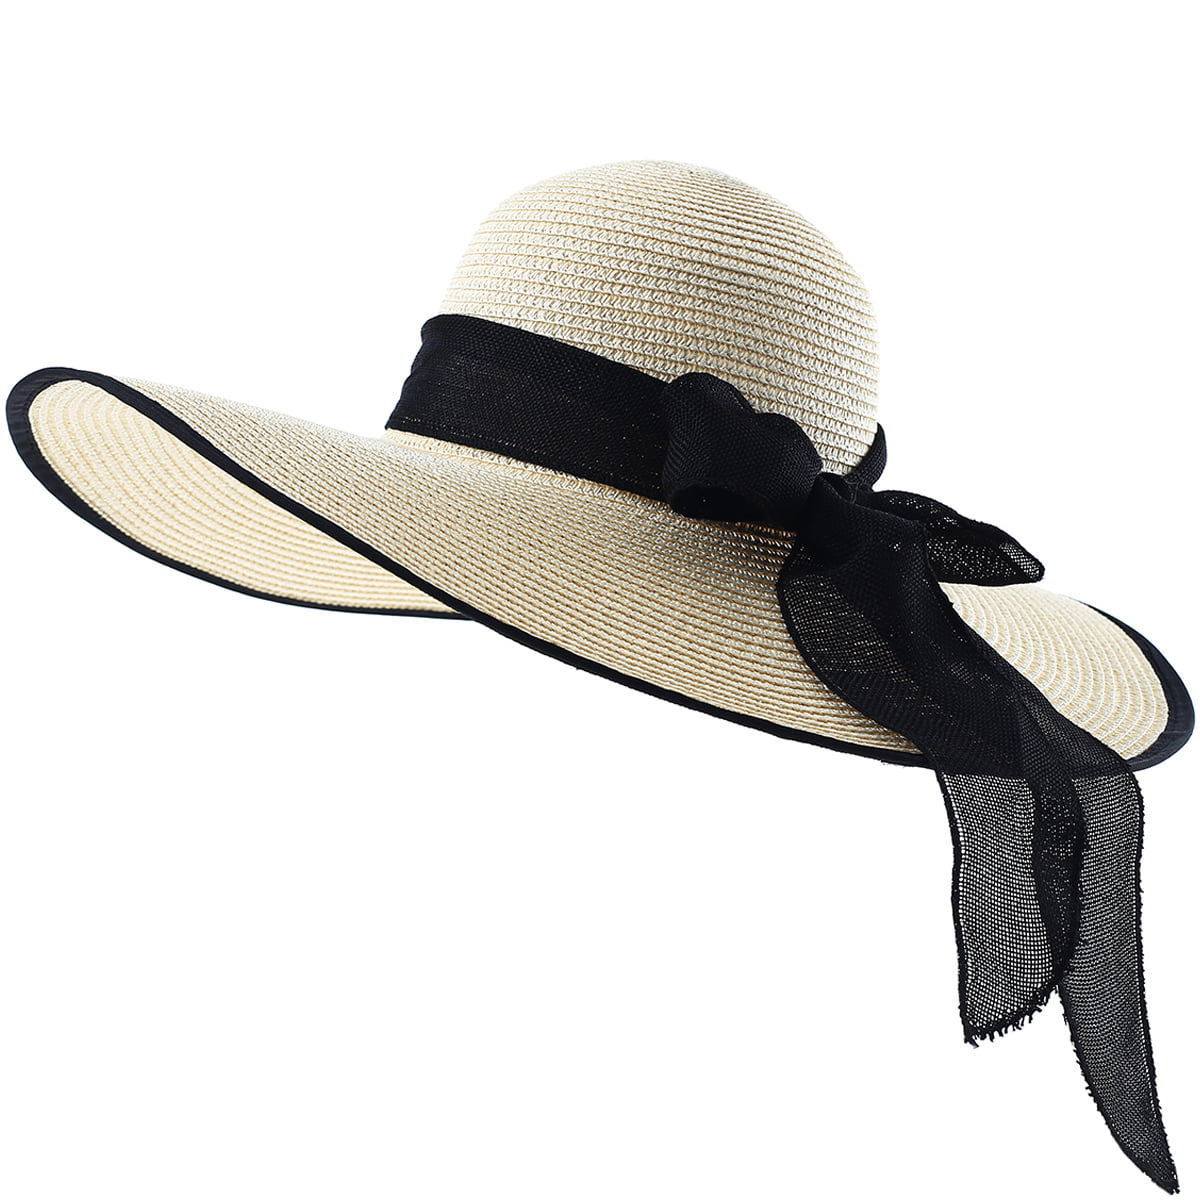 Khaki Vintage Women's Floppy Wide Brim Straw Fedora Hat Summer Sun Cap With Bow 